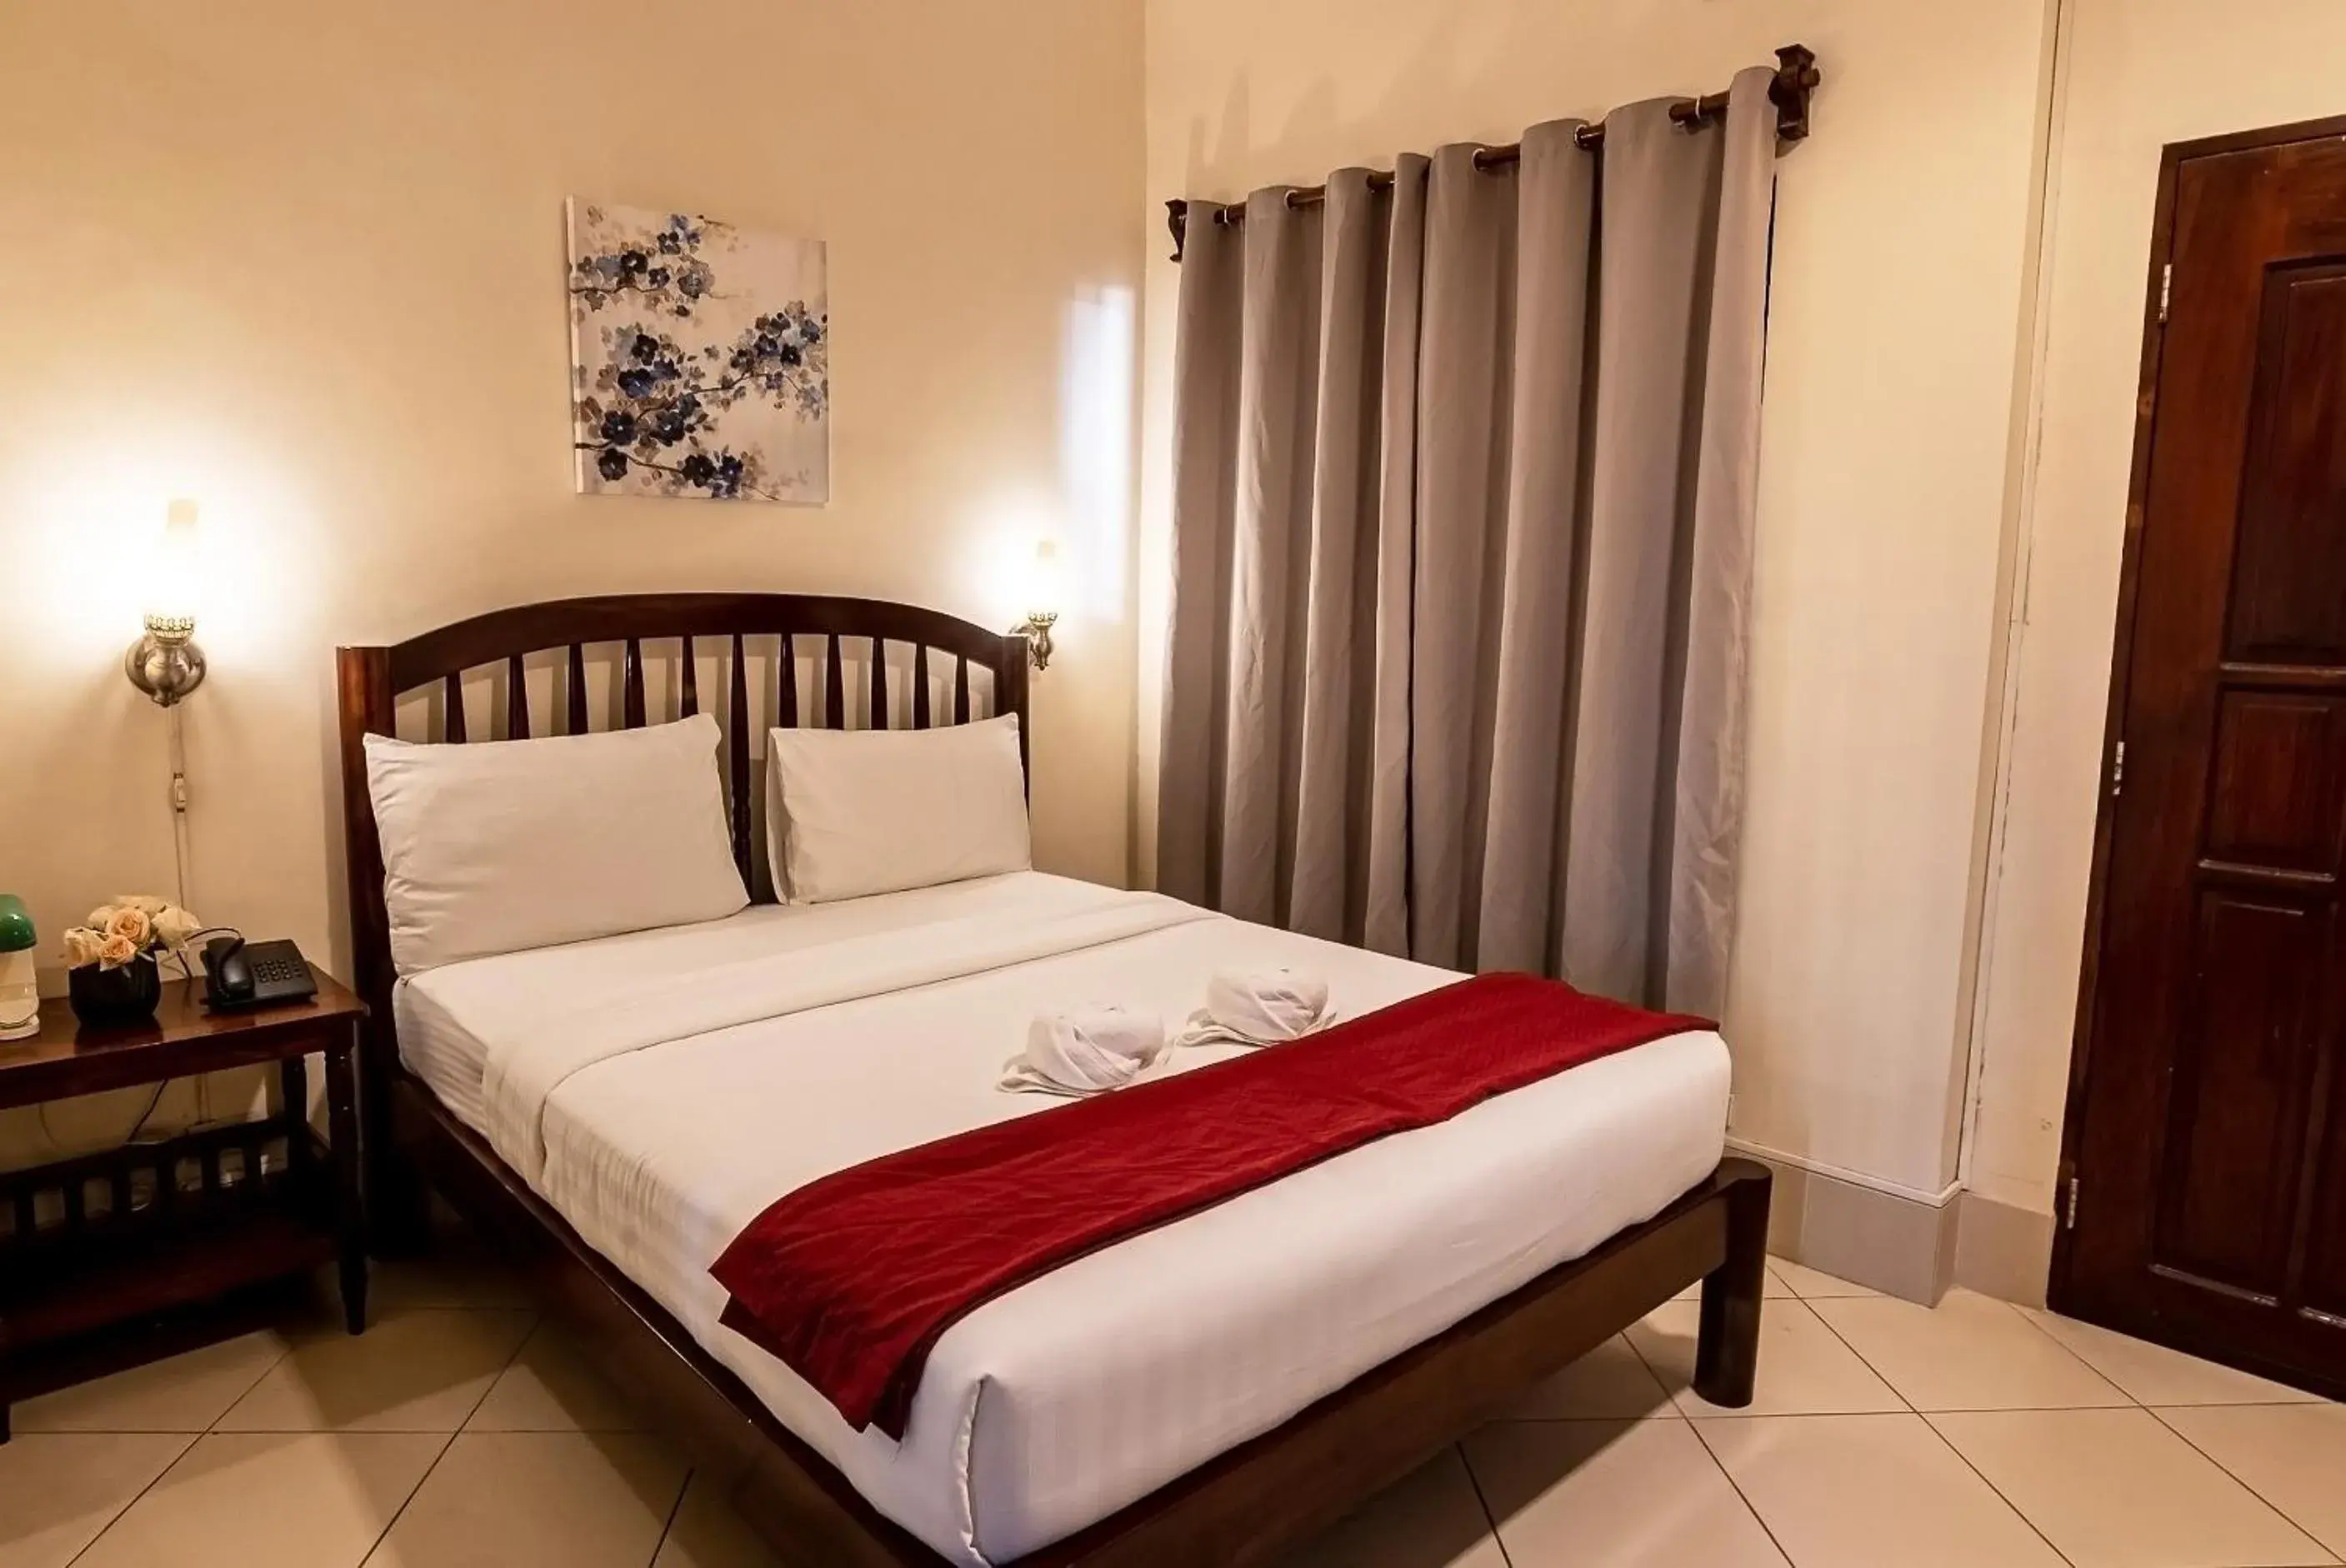 Bed in Kiwi Hotel